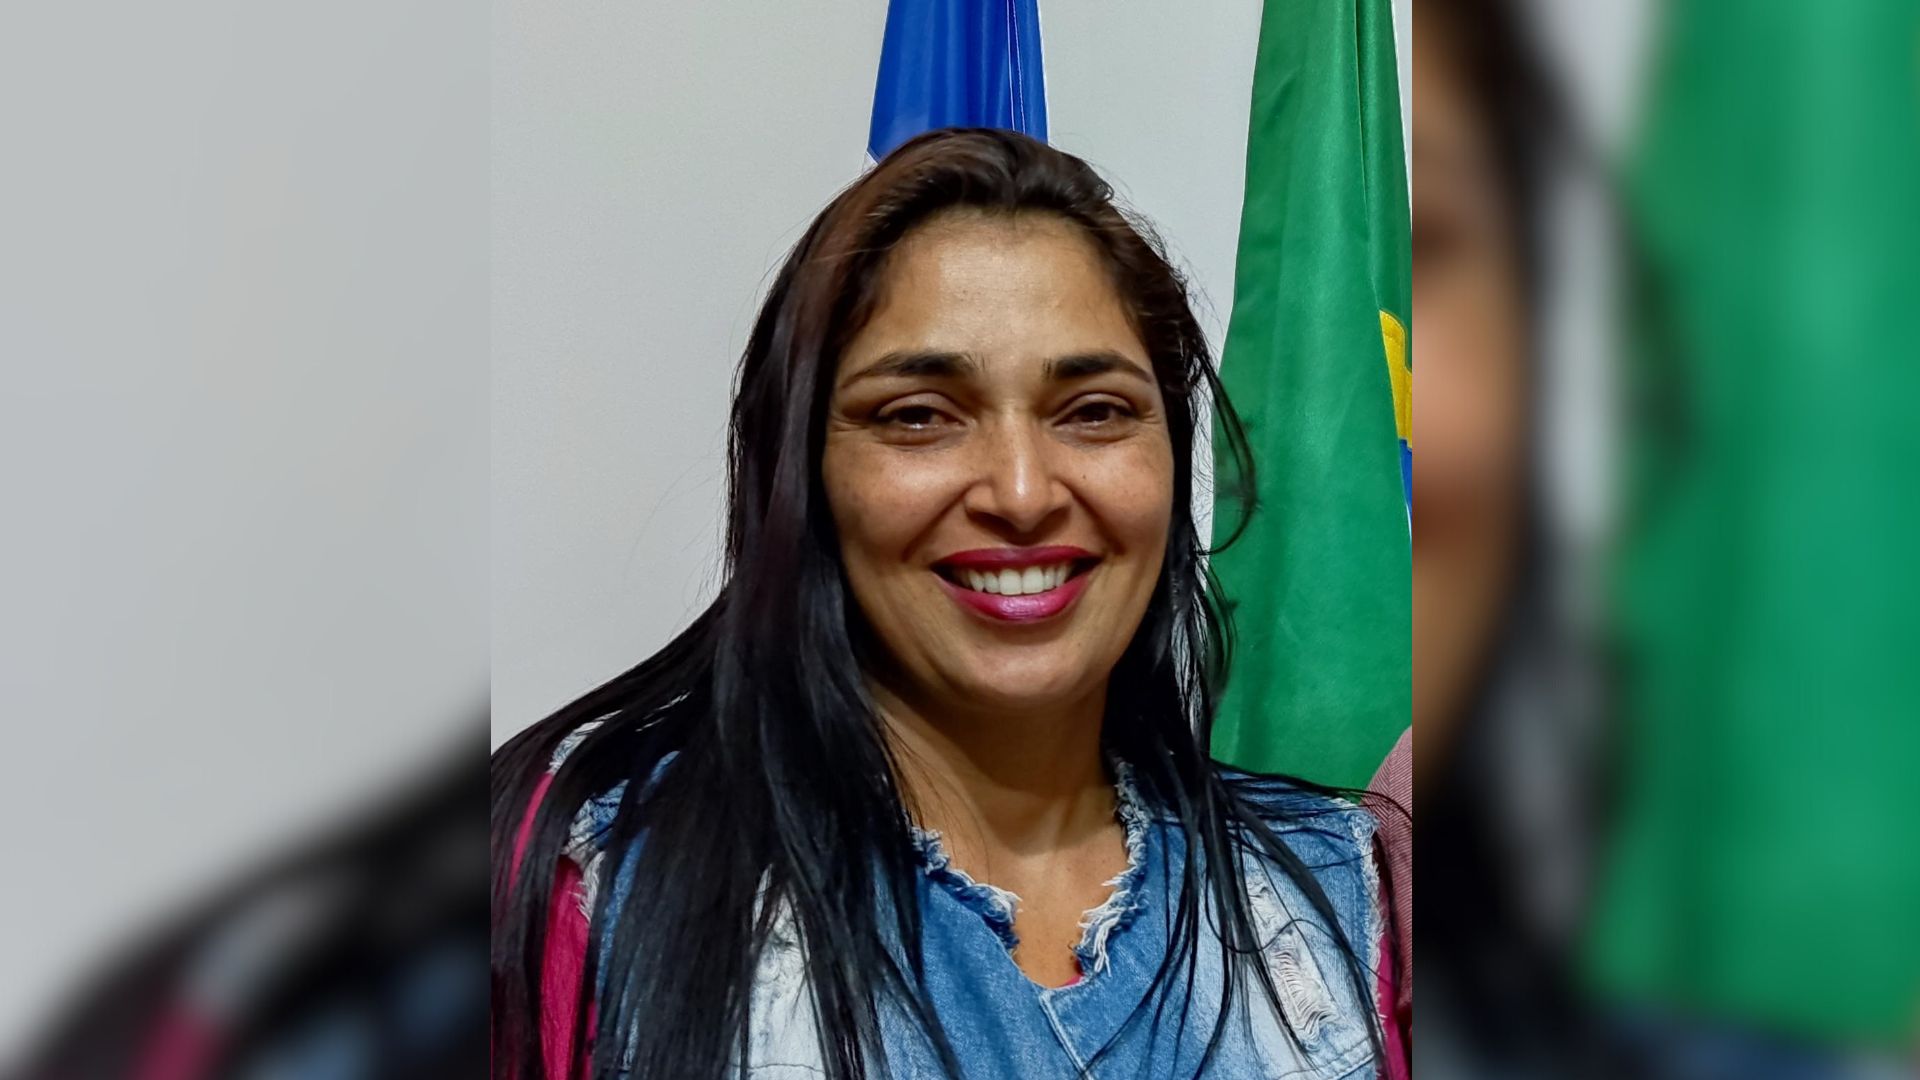 Isamara da Farmácia assume vaga de Delermano Suim (Patriota), cujos votos foram anulados em decisão da Justiça Eleitoral em 2021